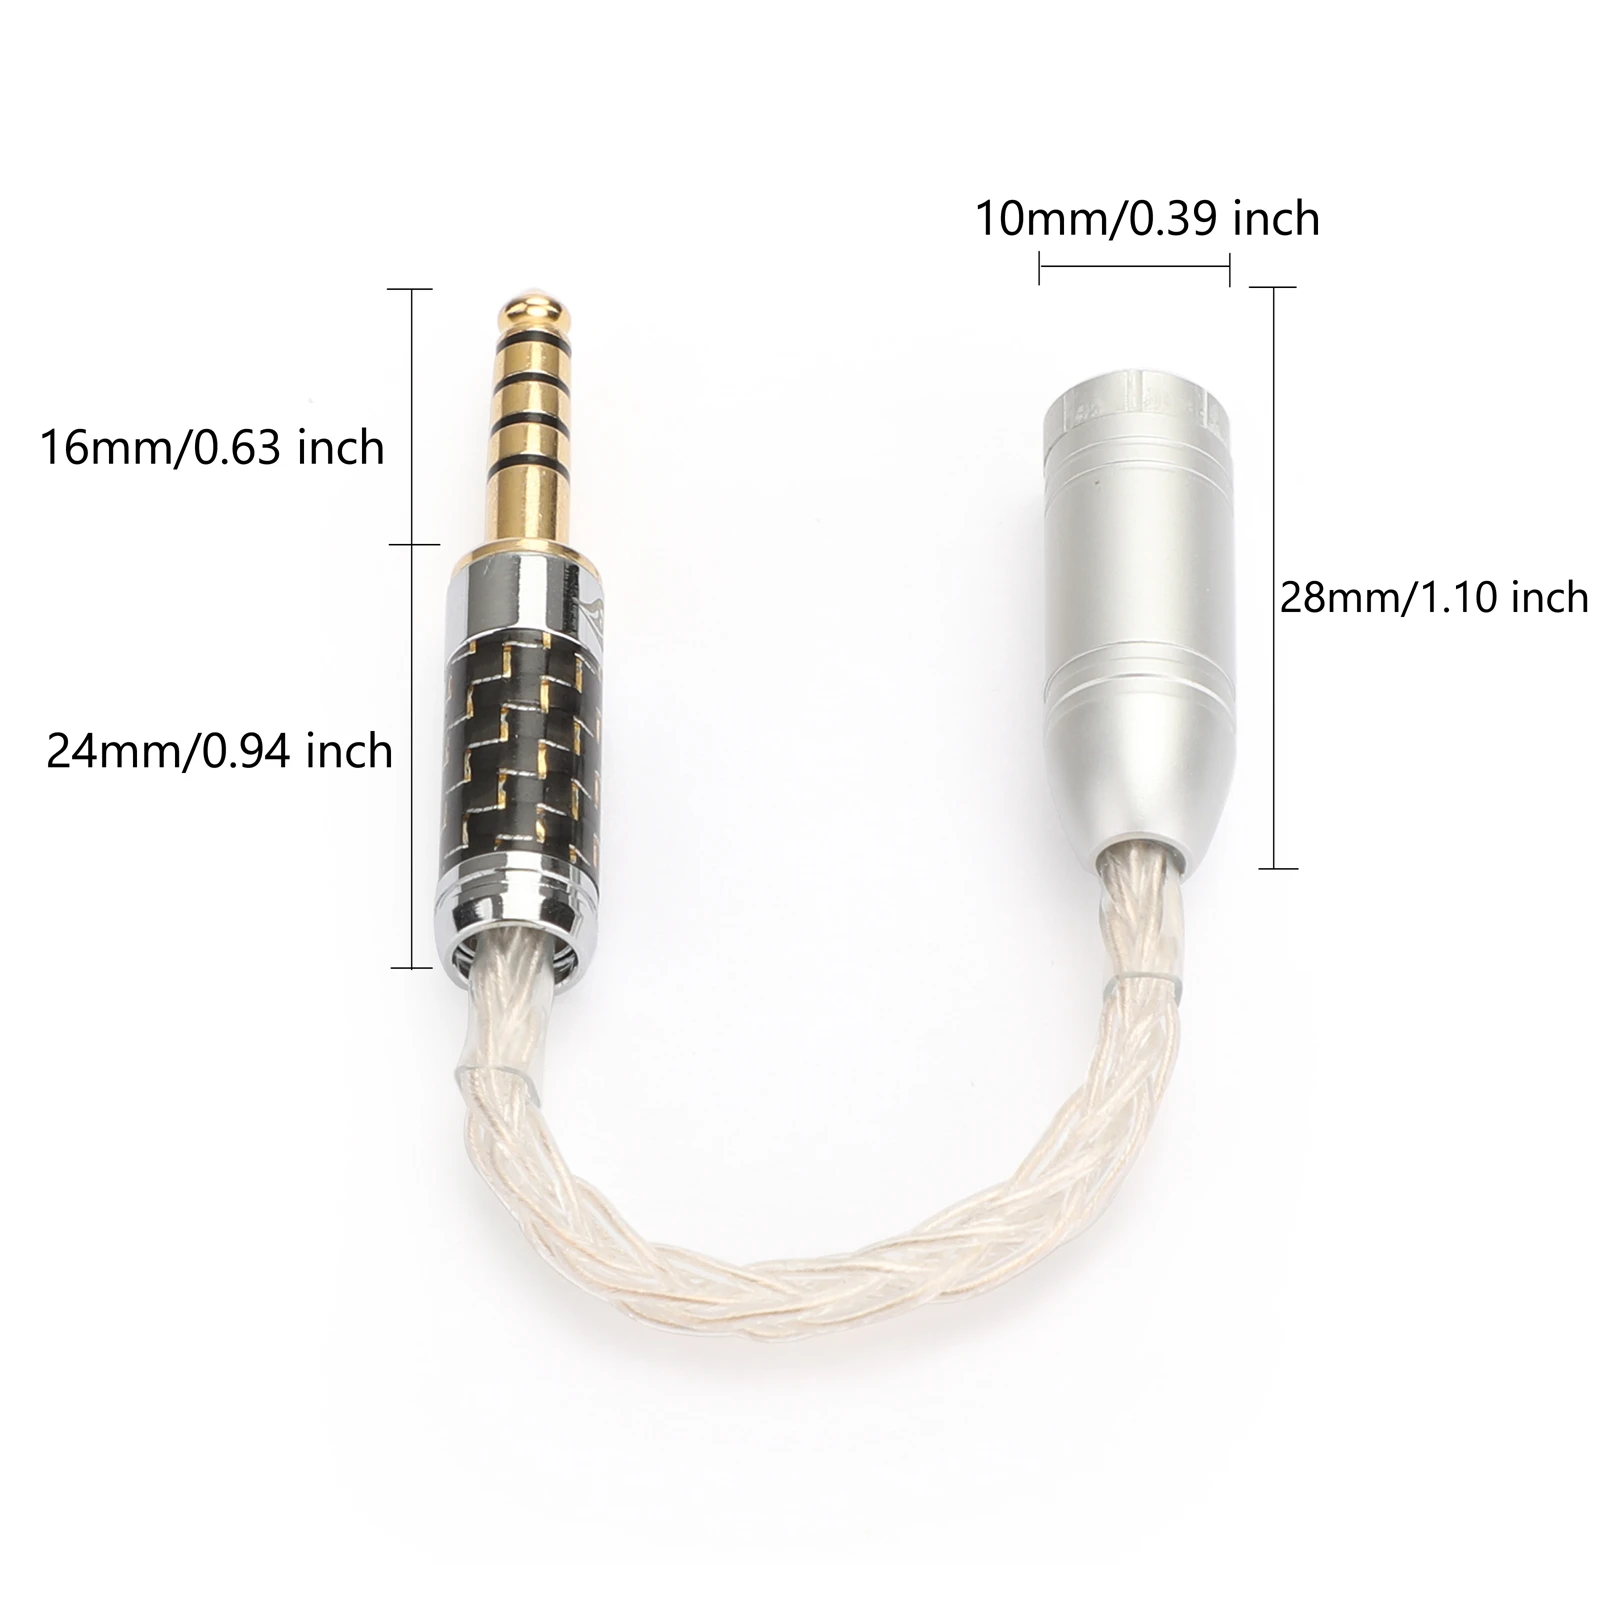 Artudatech ручной работы Adpter 8 Core аудио шнур 3,5 мм Женский до 4,4 мм Мужской HIfi музыкальный плеер штекер от 3,5 до 4,4 кабель